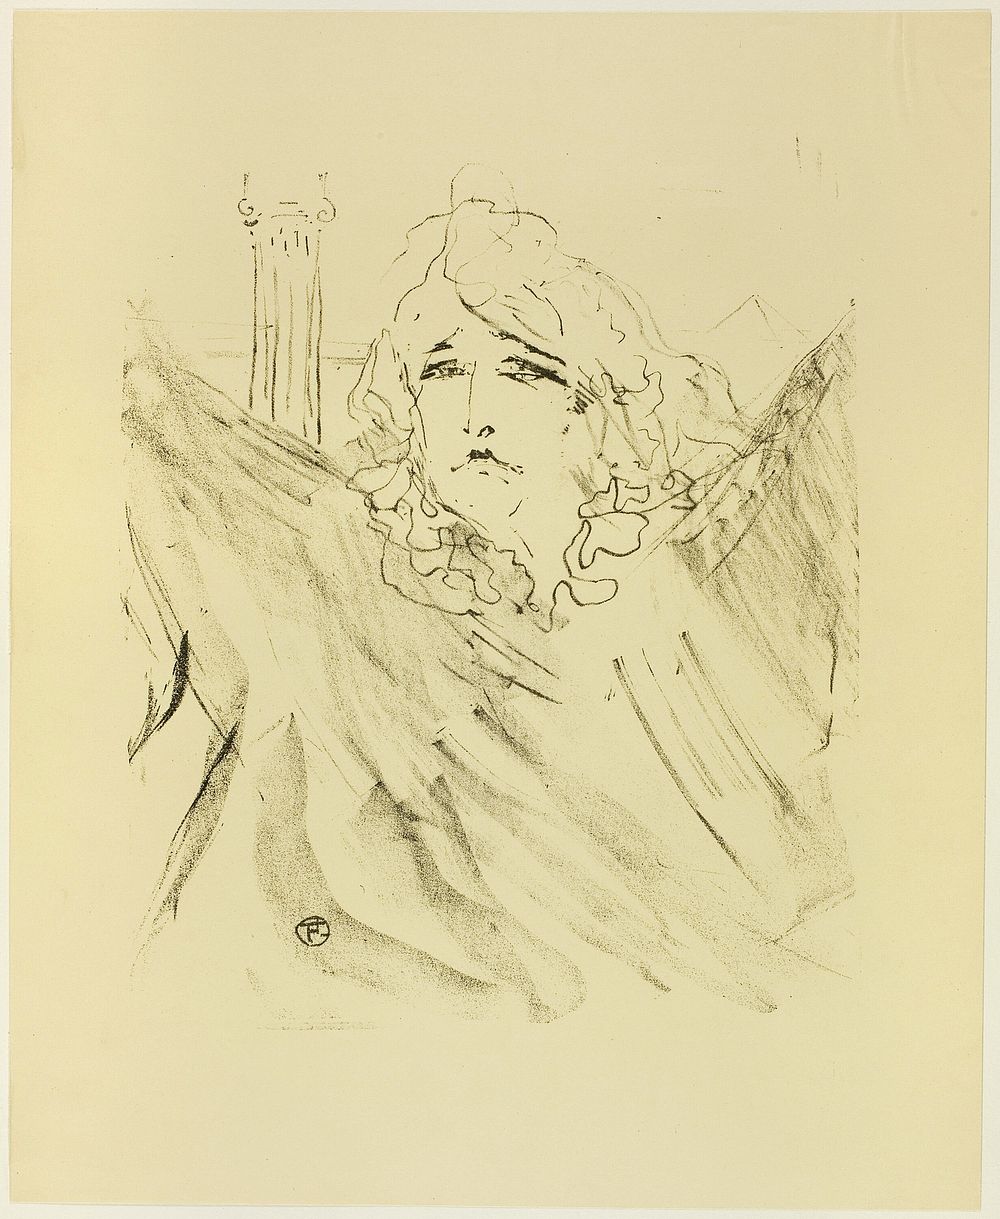 Sarah Bernhardt, from Treize Lithographies by Henri de Toulouse-Lautrec